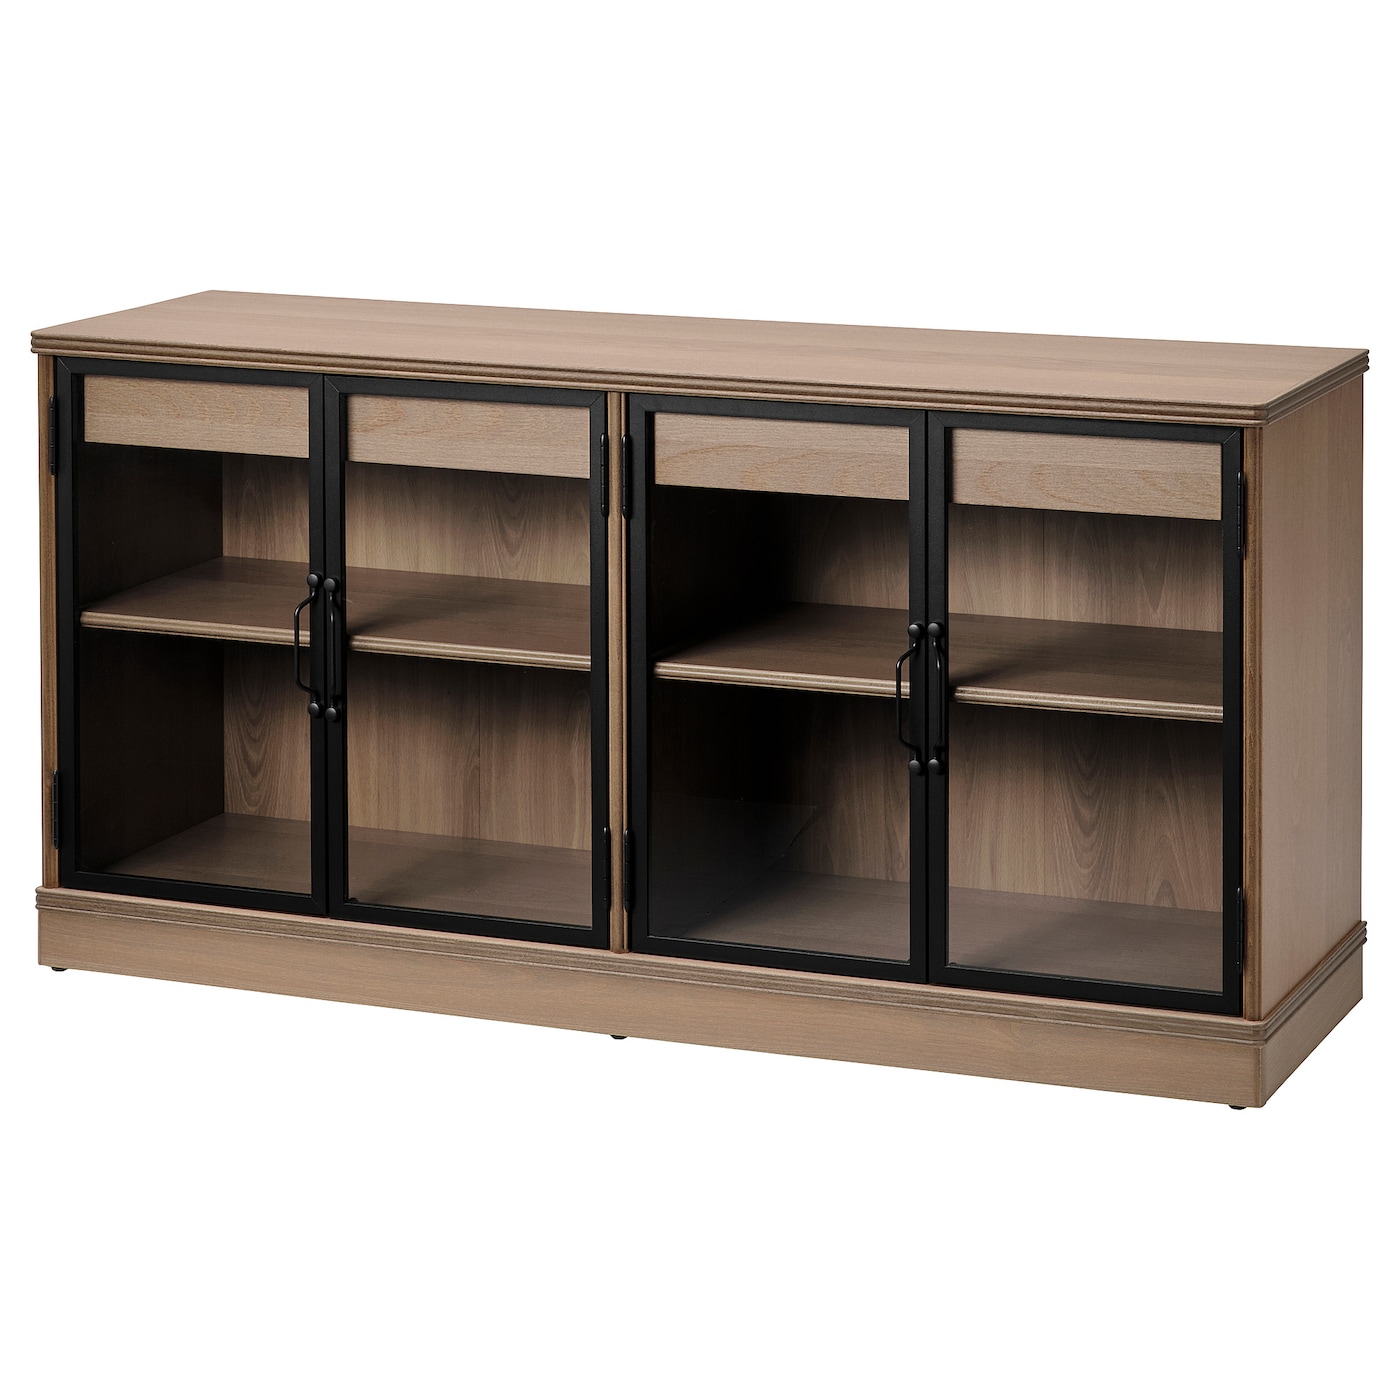 Шкаф для хранения  - LANESUND IKEA/ ЛАНЕСУНД ИКЕА, 161x47x81 см, коричневый/прозрачный